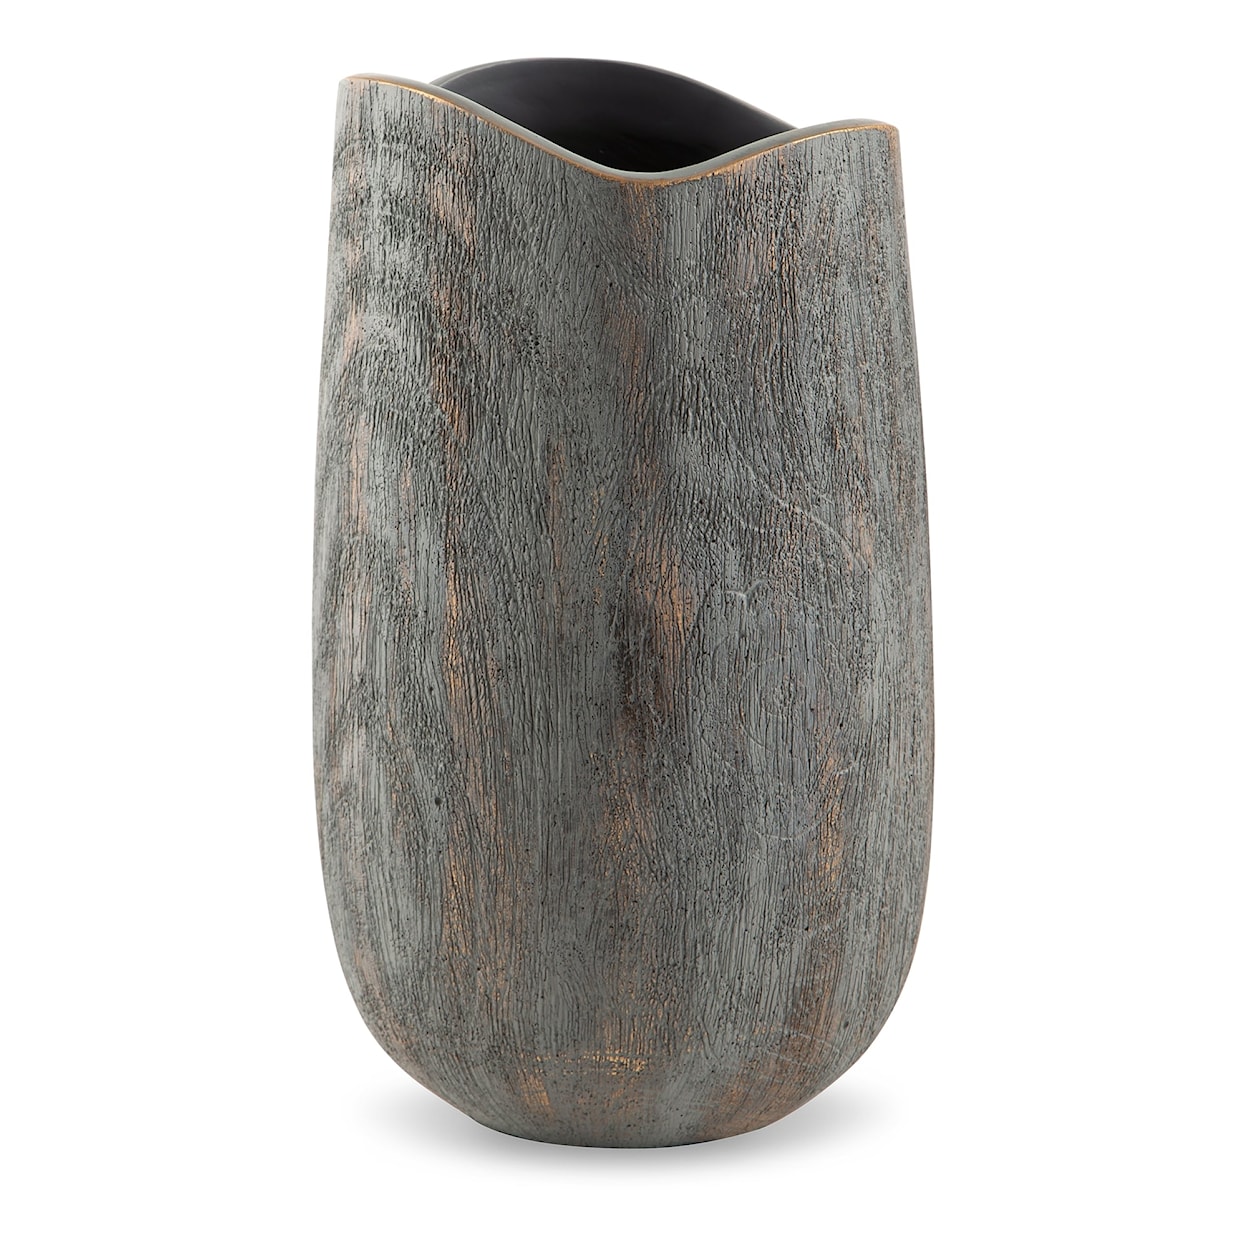 Ashley Furniture Signature Design Iverly Vase